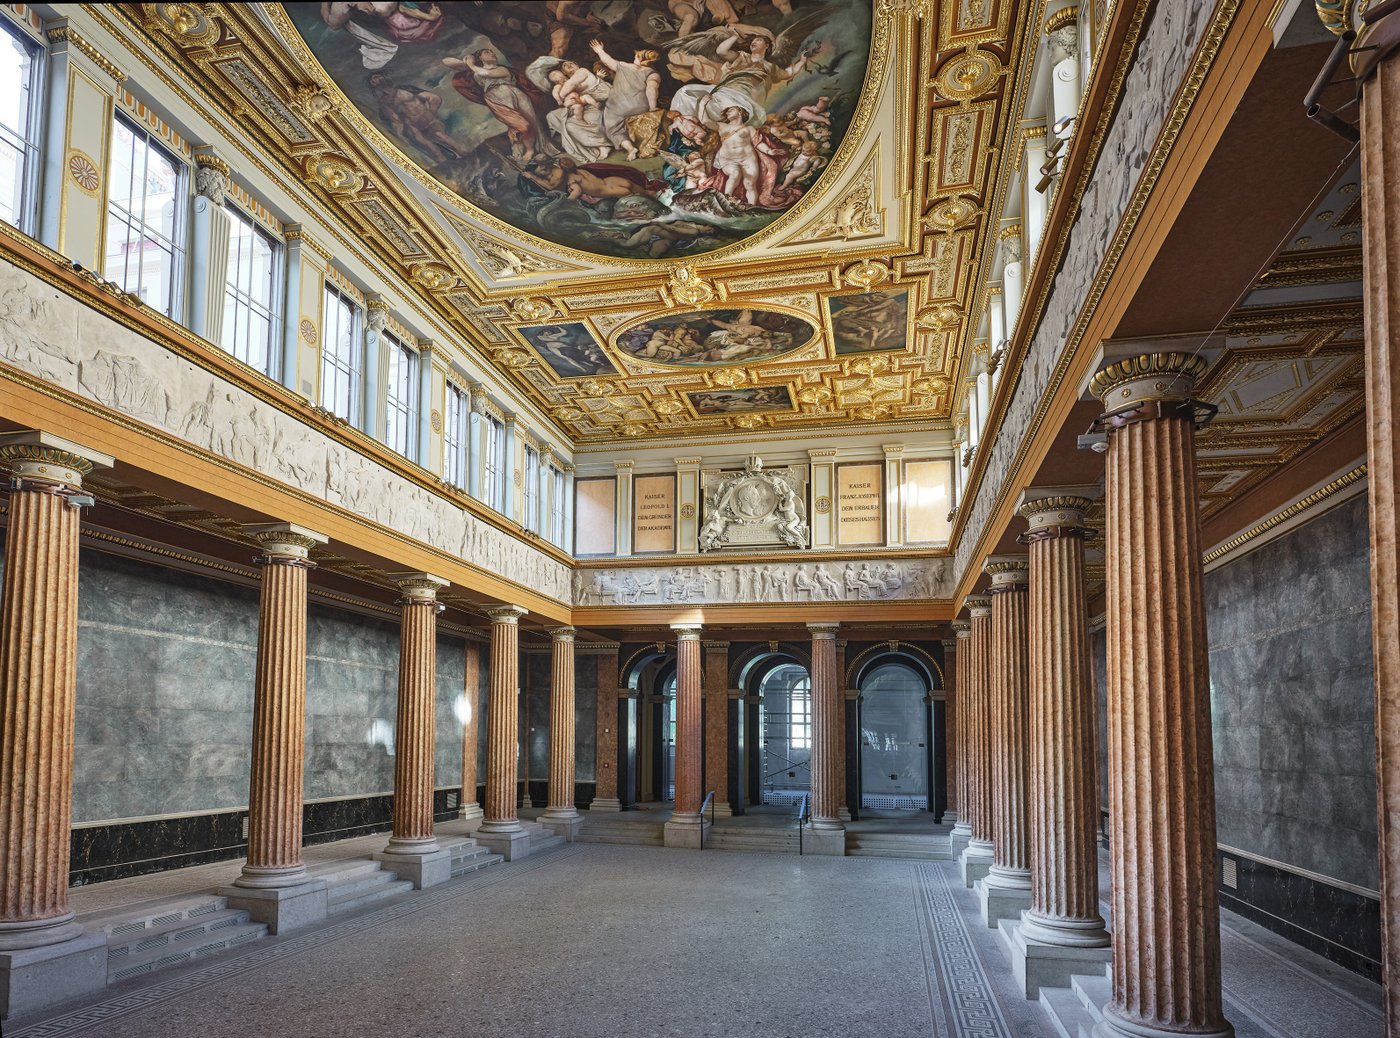 Ansicht einer Aula mit roten griechischen Säulenreihe, Stufen, figuralem Fries,goldverzierten eckigen Oberfenstern, gold verzierte Decke mit Stuckdeko die Deckenmalerei umfasst